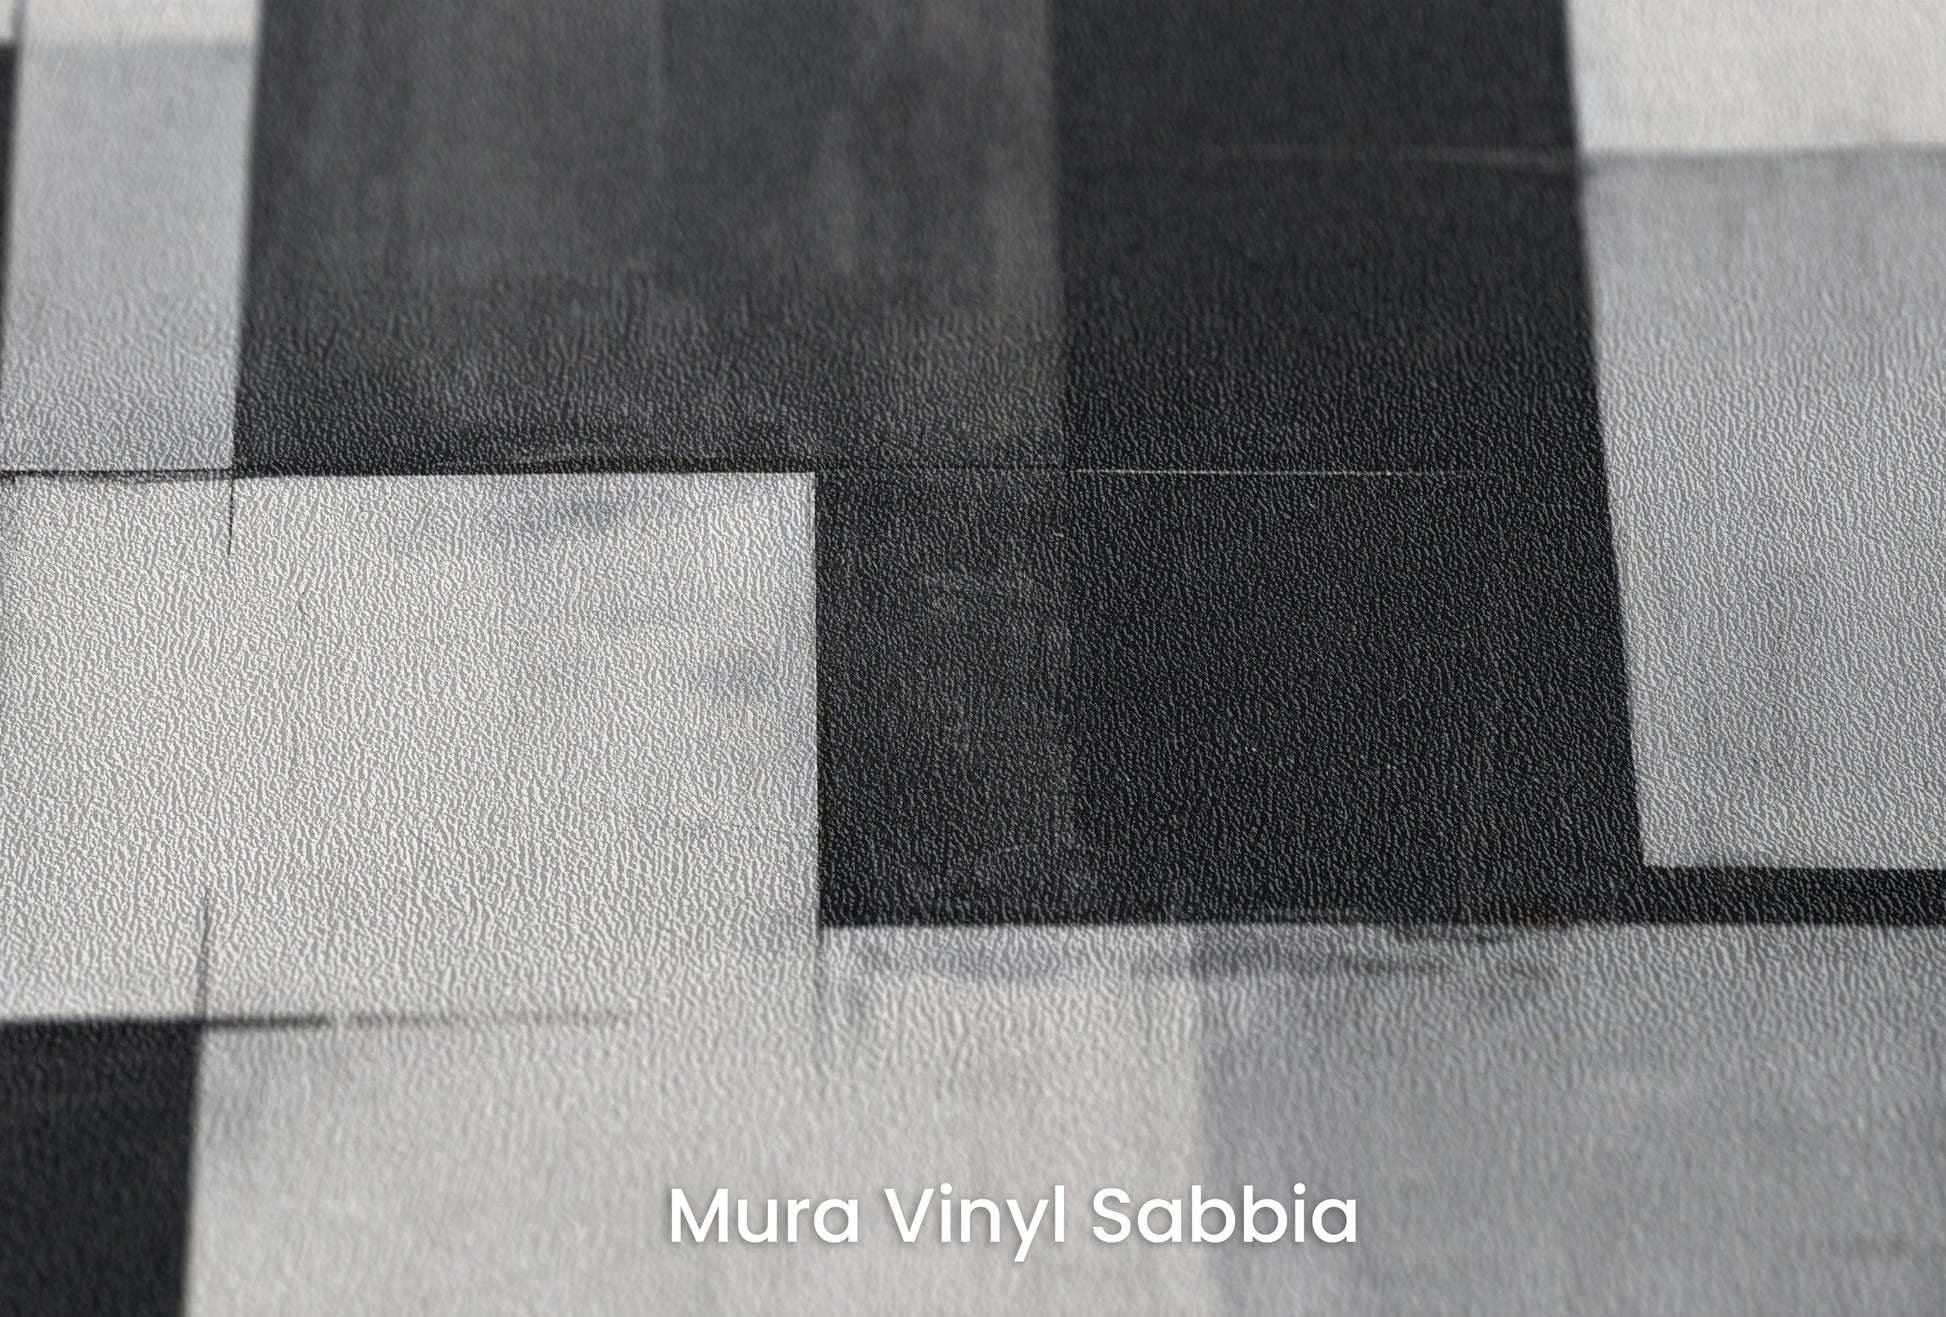 Zbliżenie na artystyczną fototapetę o nazwie Abstract Squares na podłożu Mura Vinyl Sabbia struktura grubego ziarna piasku.